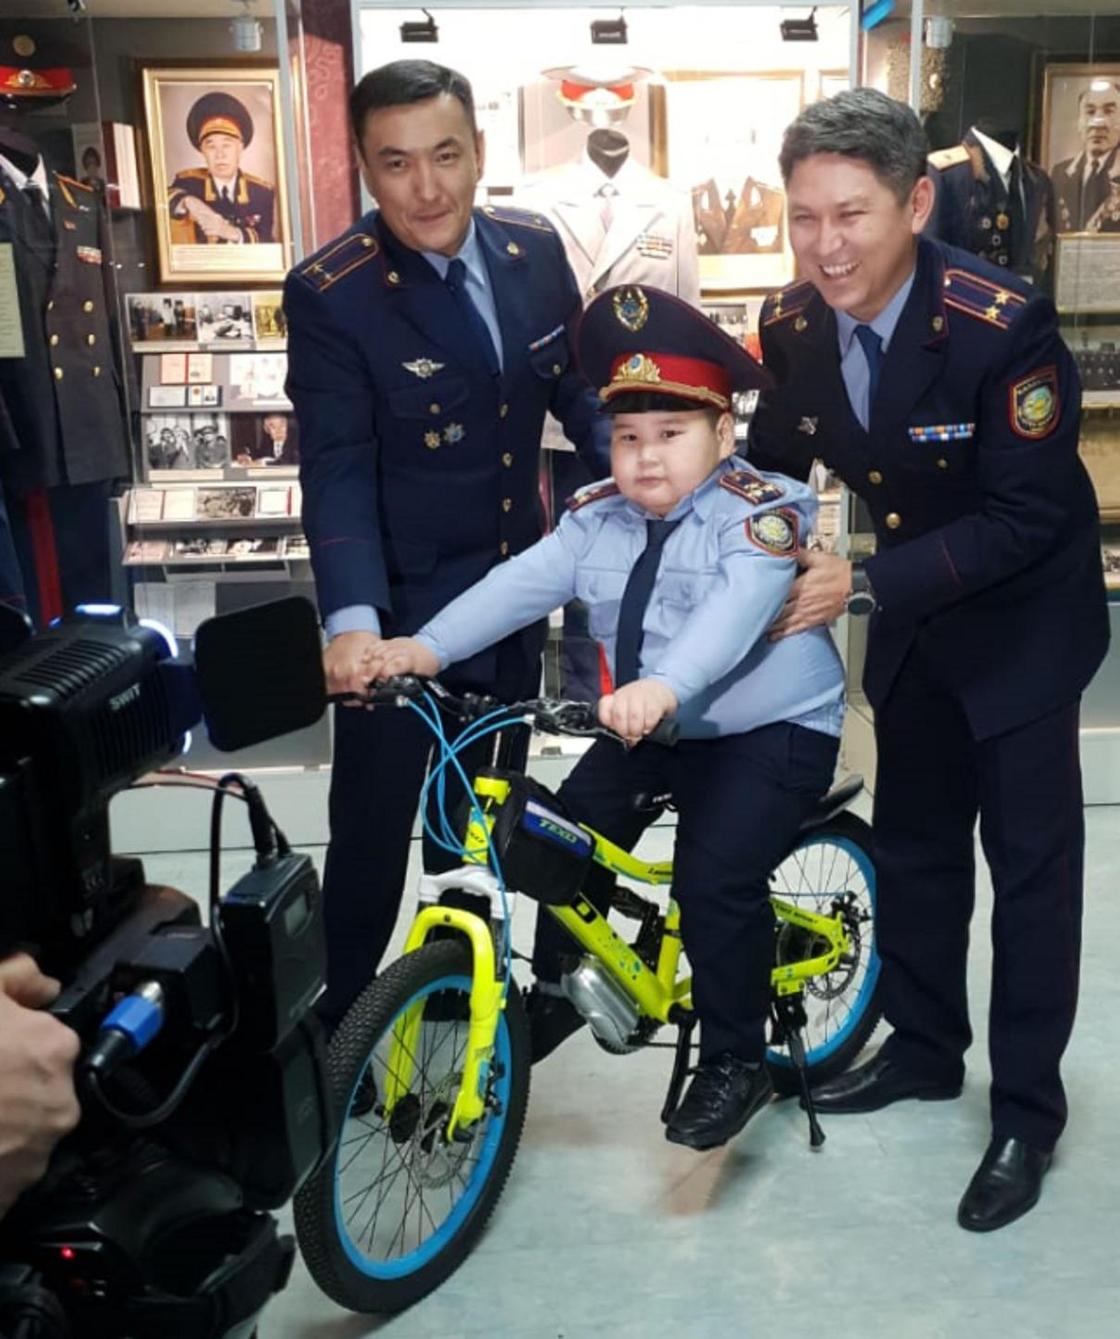 Мальчик надел костюм полицейского на утренник и получил подарок от главы МВД (фото, видео)